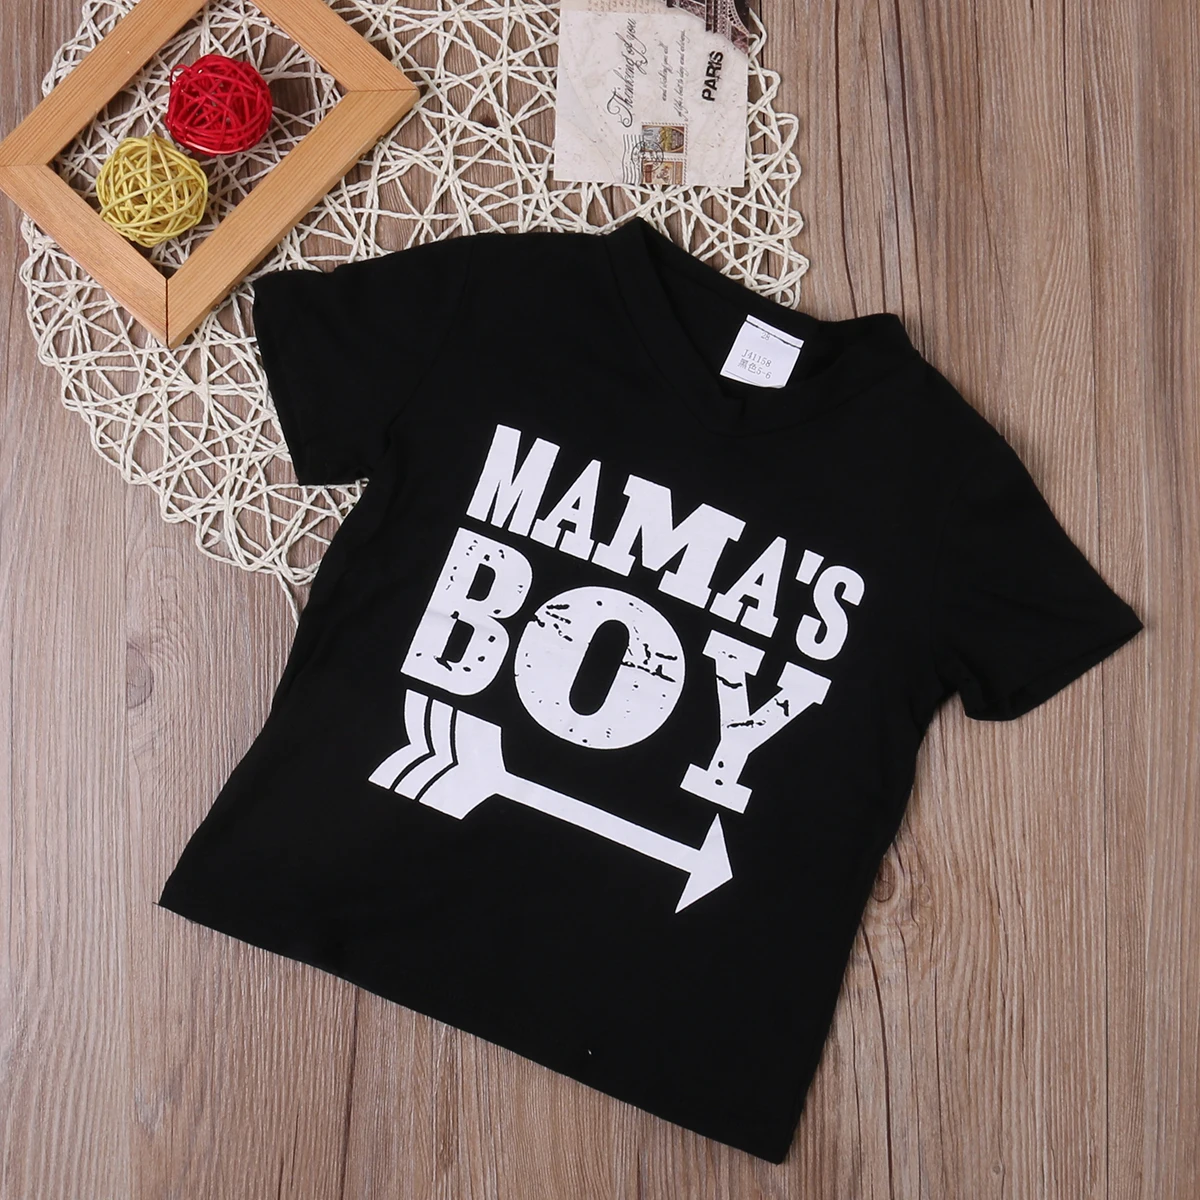 Детская футболка для малышей Одежда для мальчиков и девочек футболка с надписью «Мама» для мальчиков рубашка с короткими рукавами хлопковая одежда для маленьких мальчиков